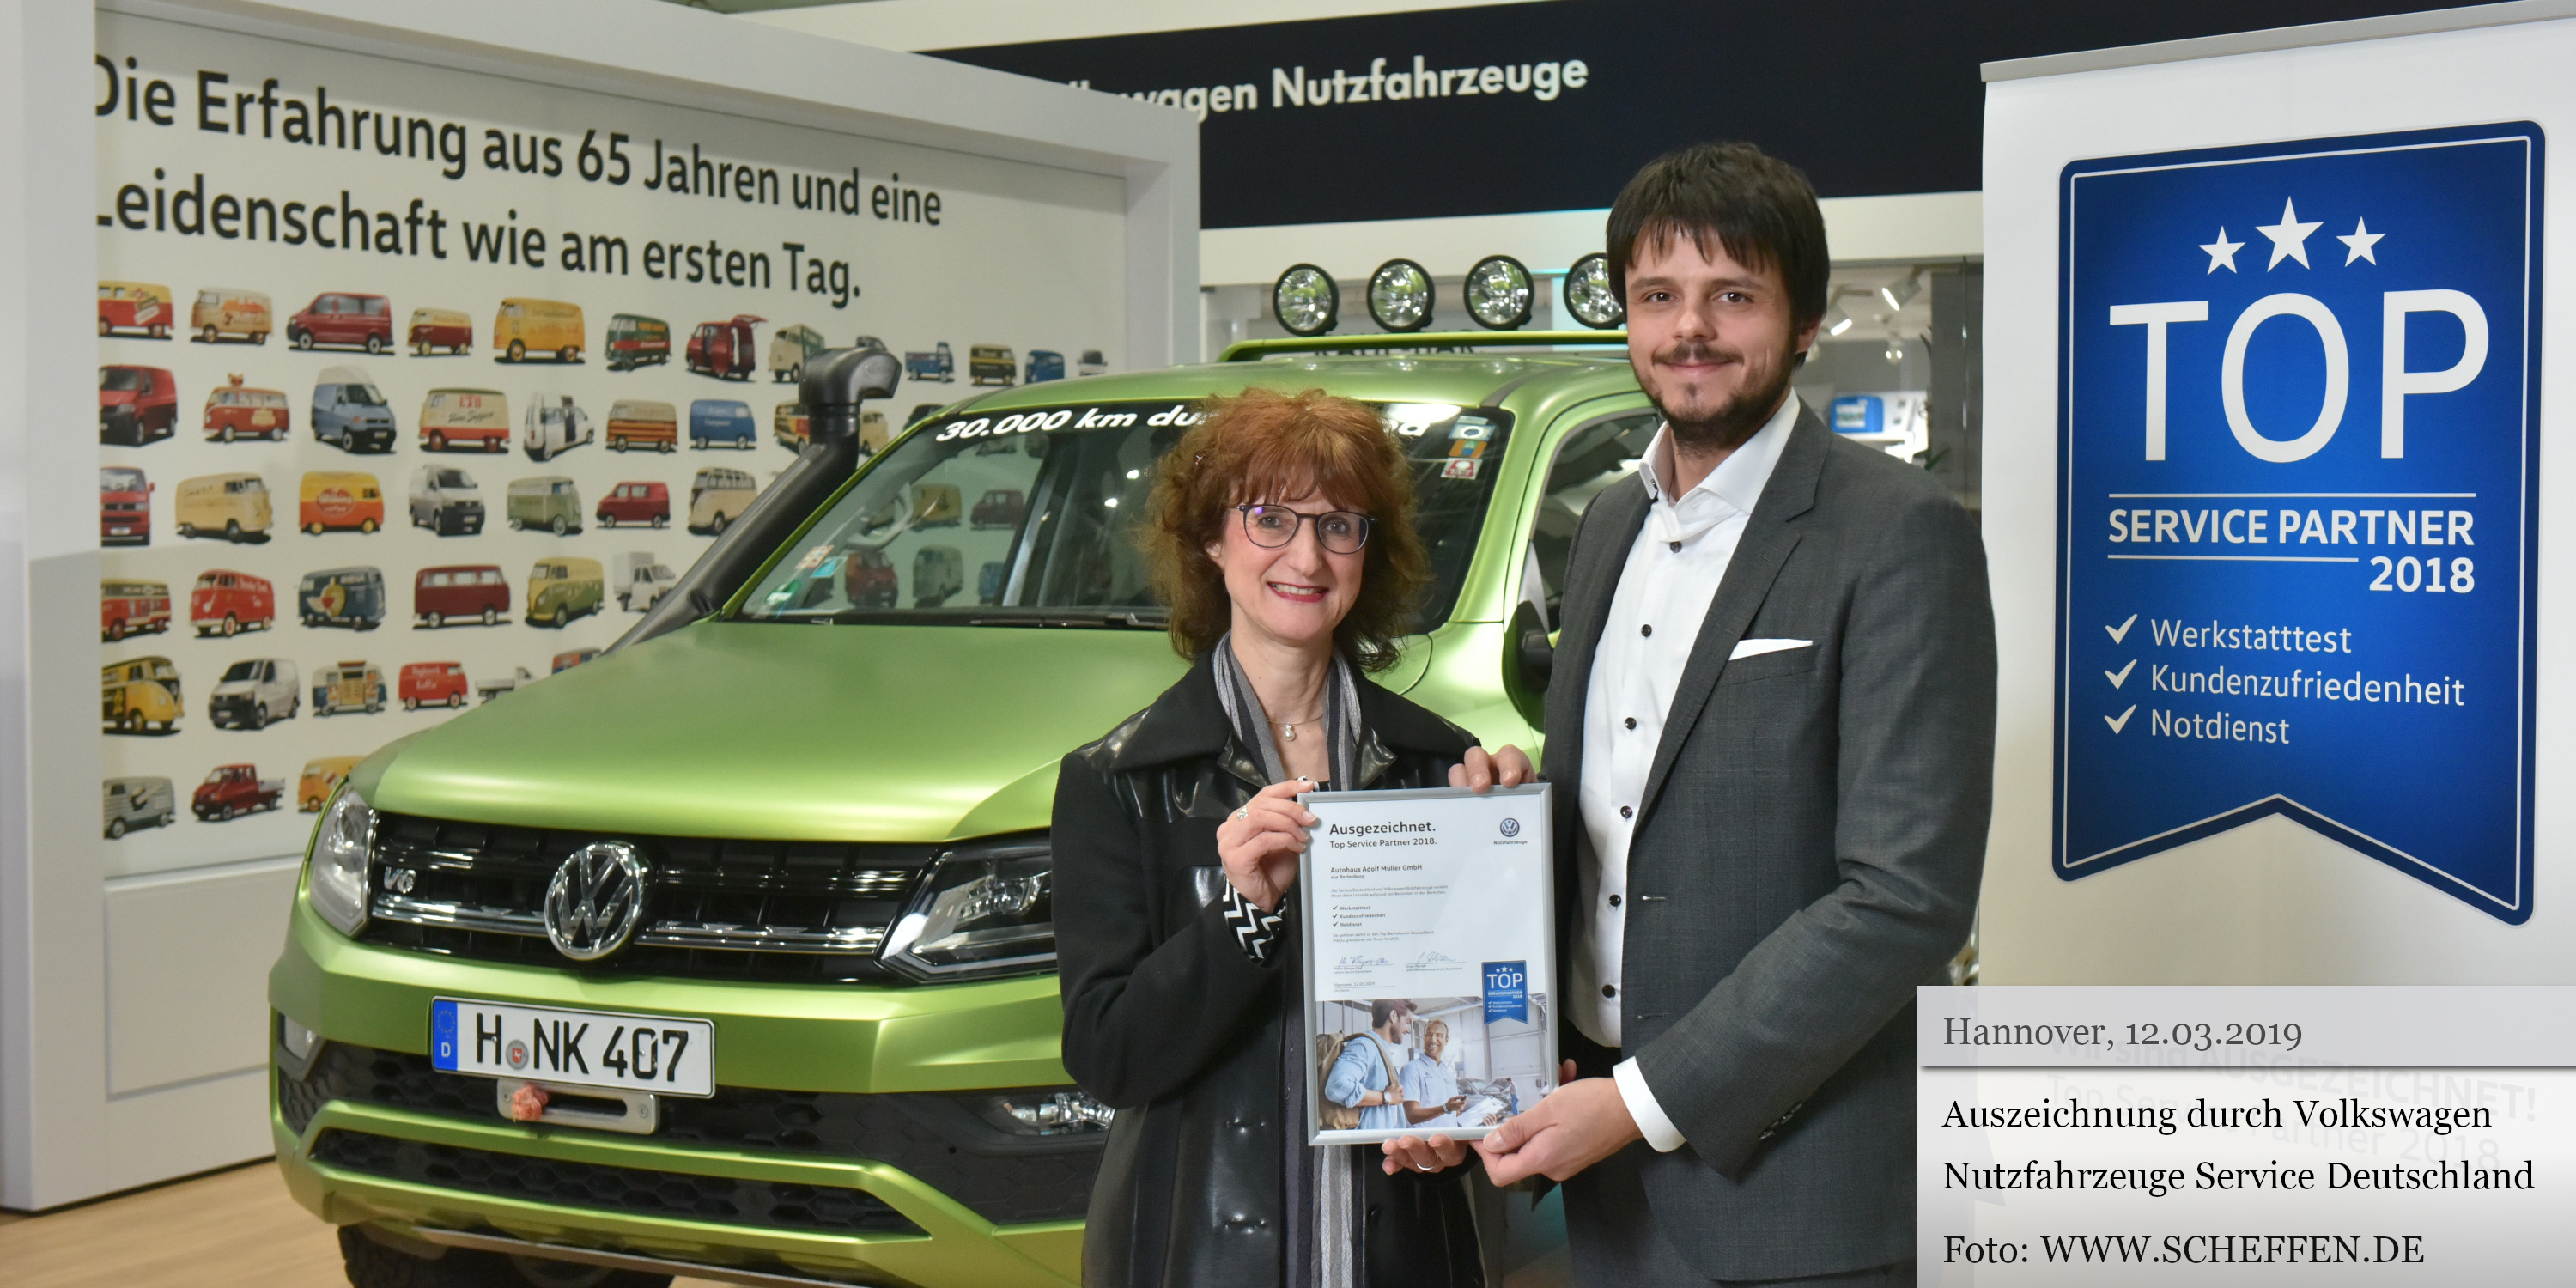 Auszeichnung Volkswagen Nutzfahrzeuge Service Deutschland 2019 Top Service Partner - Entgegennahme Kay Müller in Hannover